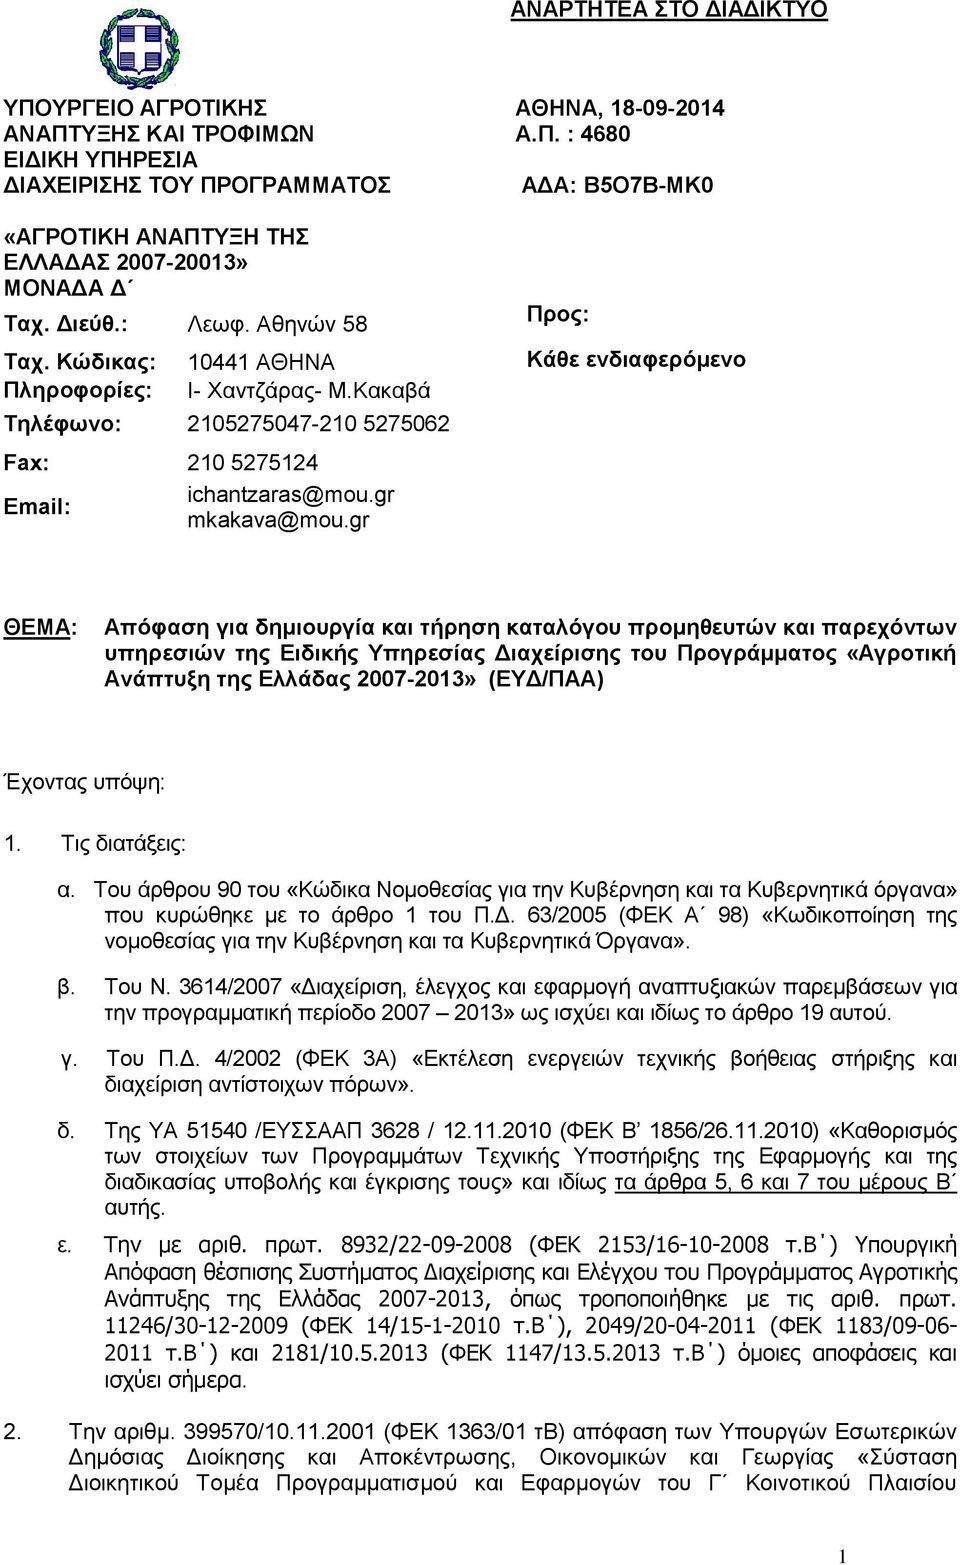 gr ΘΕΜΑ: Απόφαση για δημιουργία και τήρηση καταλόγου προμηθευτών και παρεχόντων υπηρεσιών της Ειδικής Υπηρεσίας Διαχείρισης του Προγράμματος «Αγροτική Ανάπτυξη της Ελλάδας 2007-2013» (ΕΥΔ/ΠΑΑ)